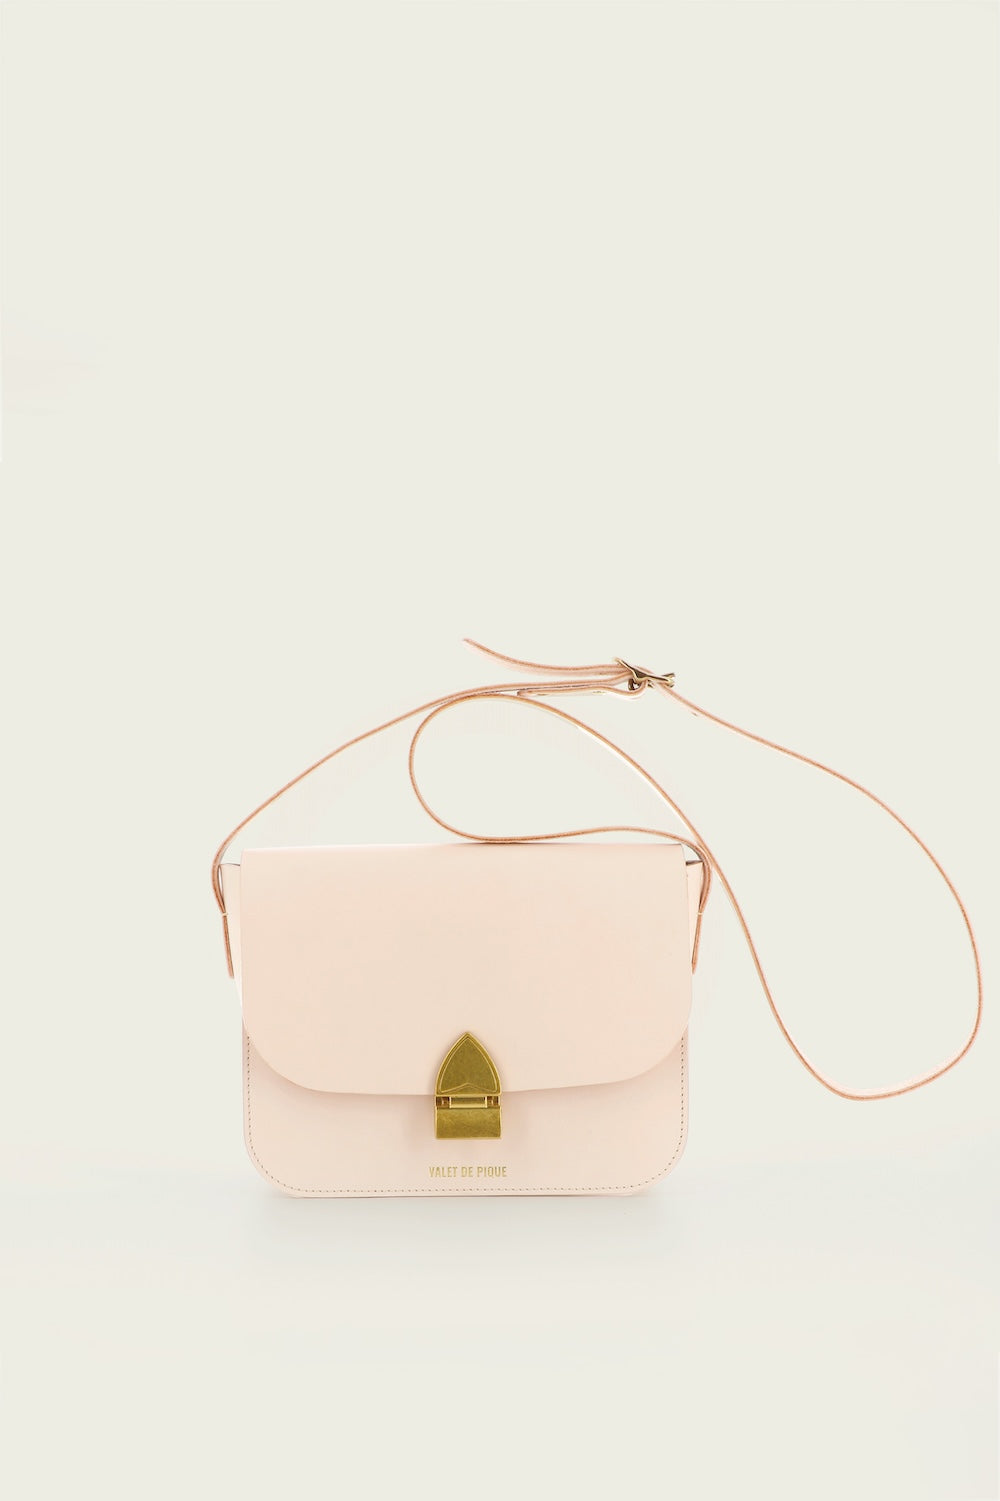 The Colette handbag - Épure